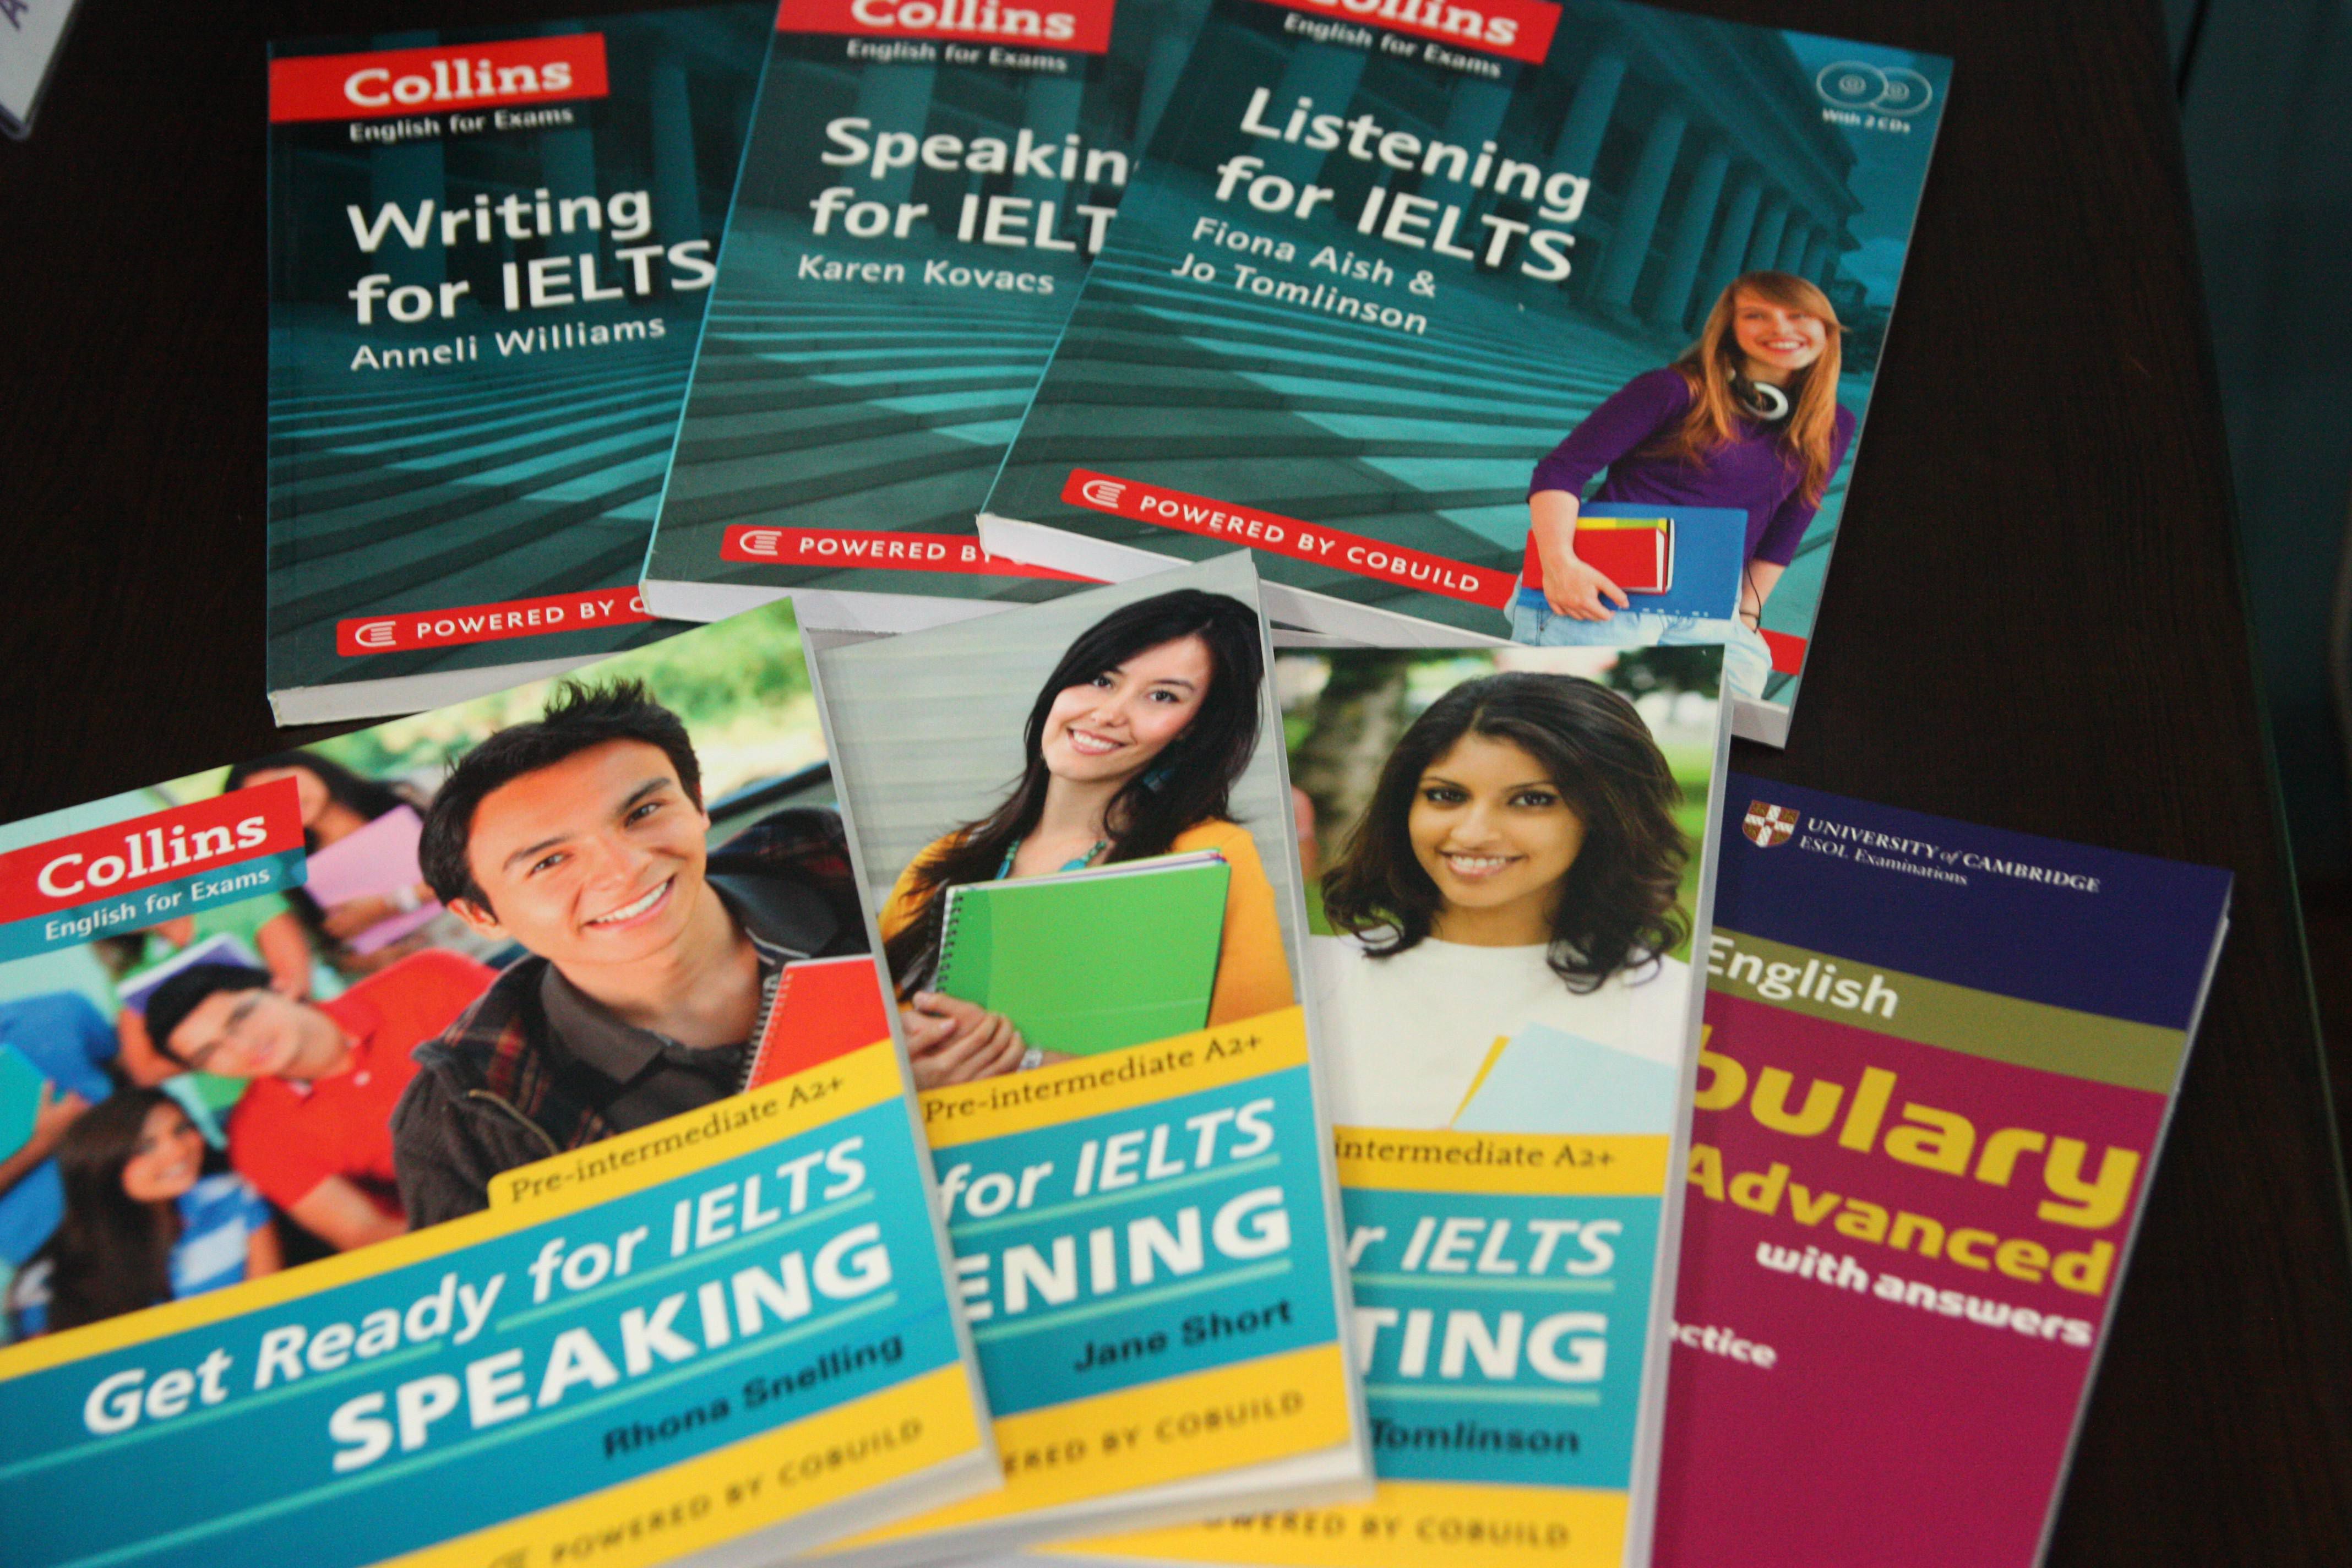 Giáo trình cập nhật khóa IELTS và TOEFL tại CIP năm 2014